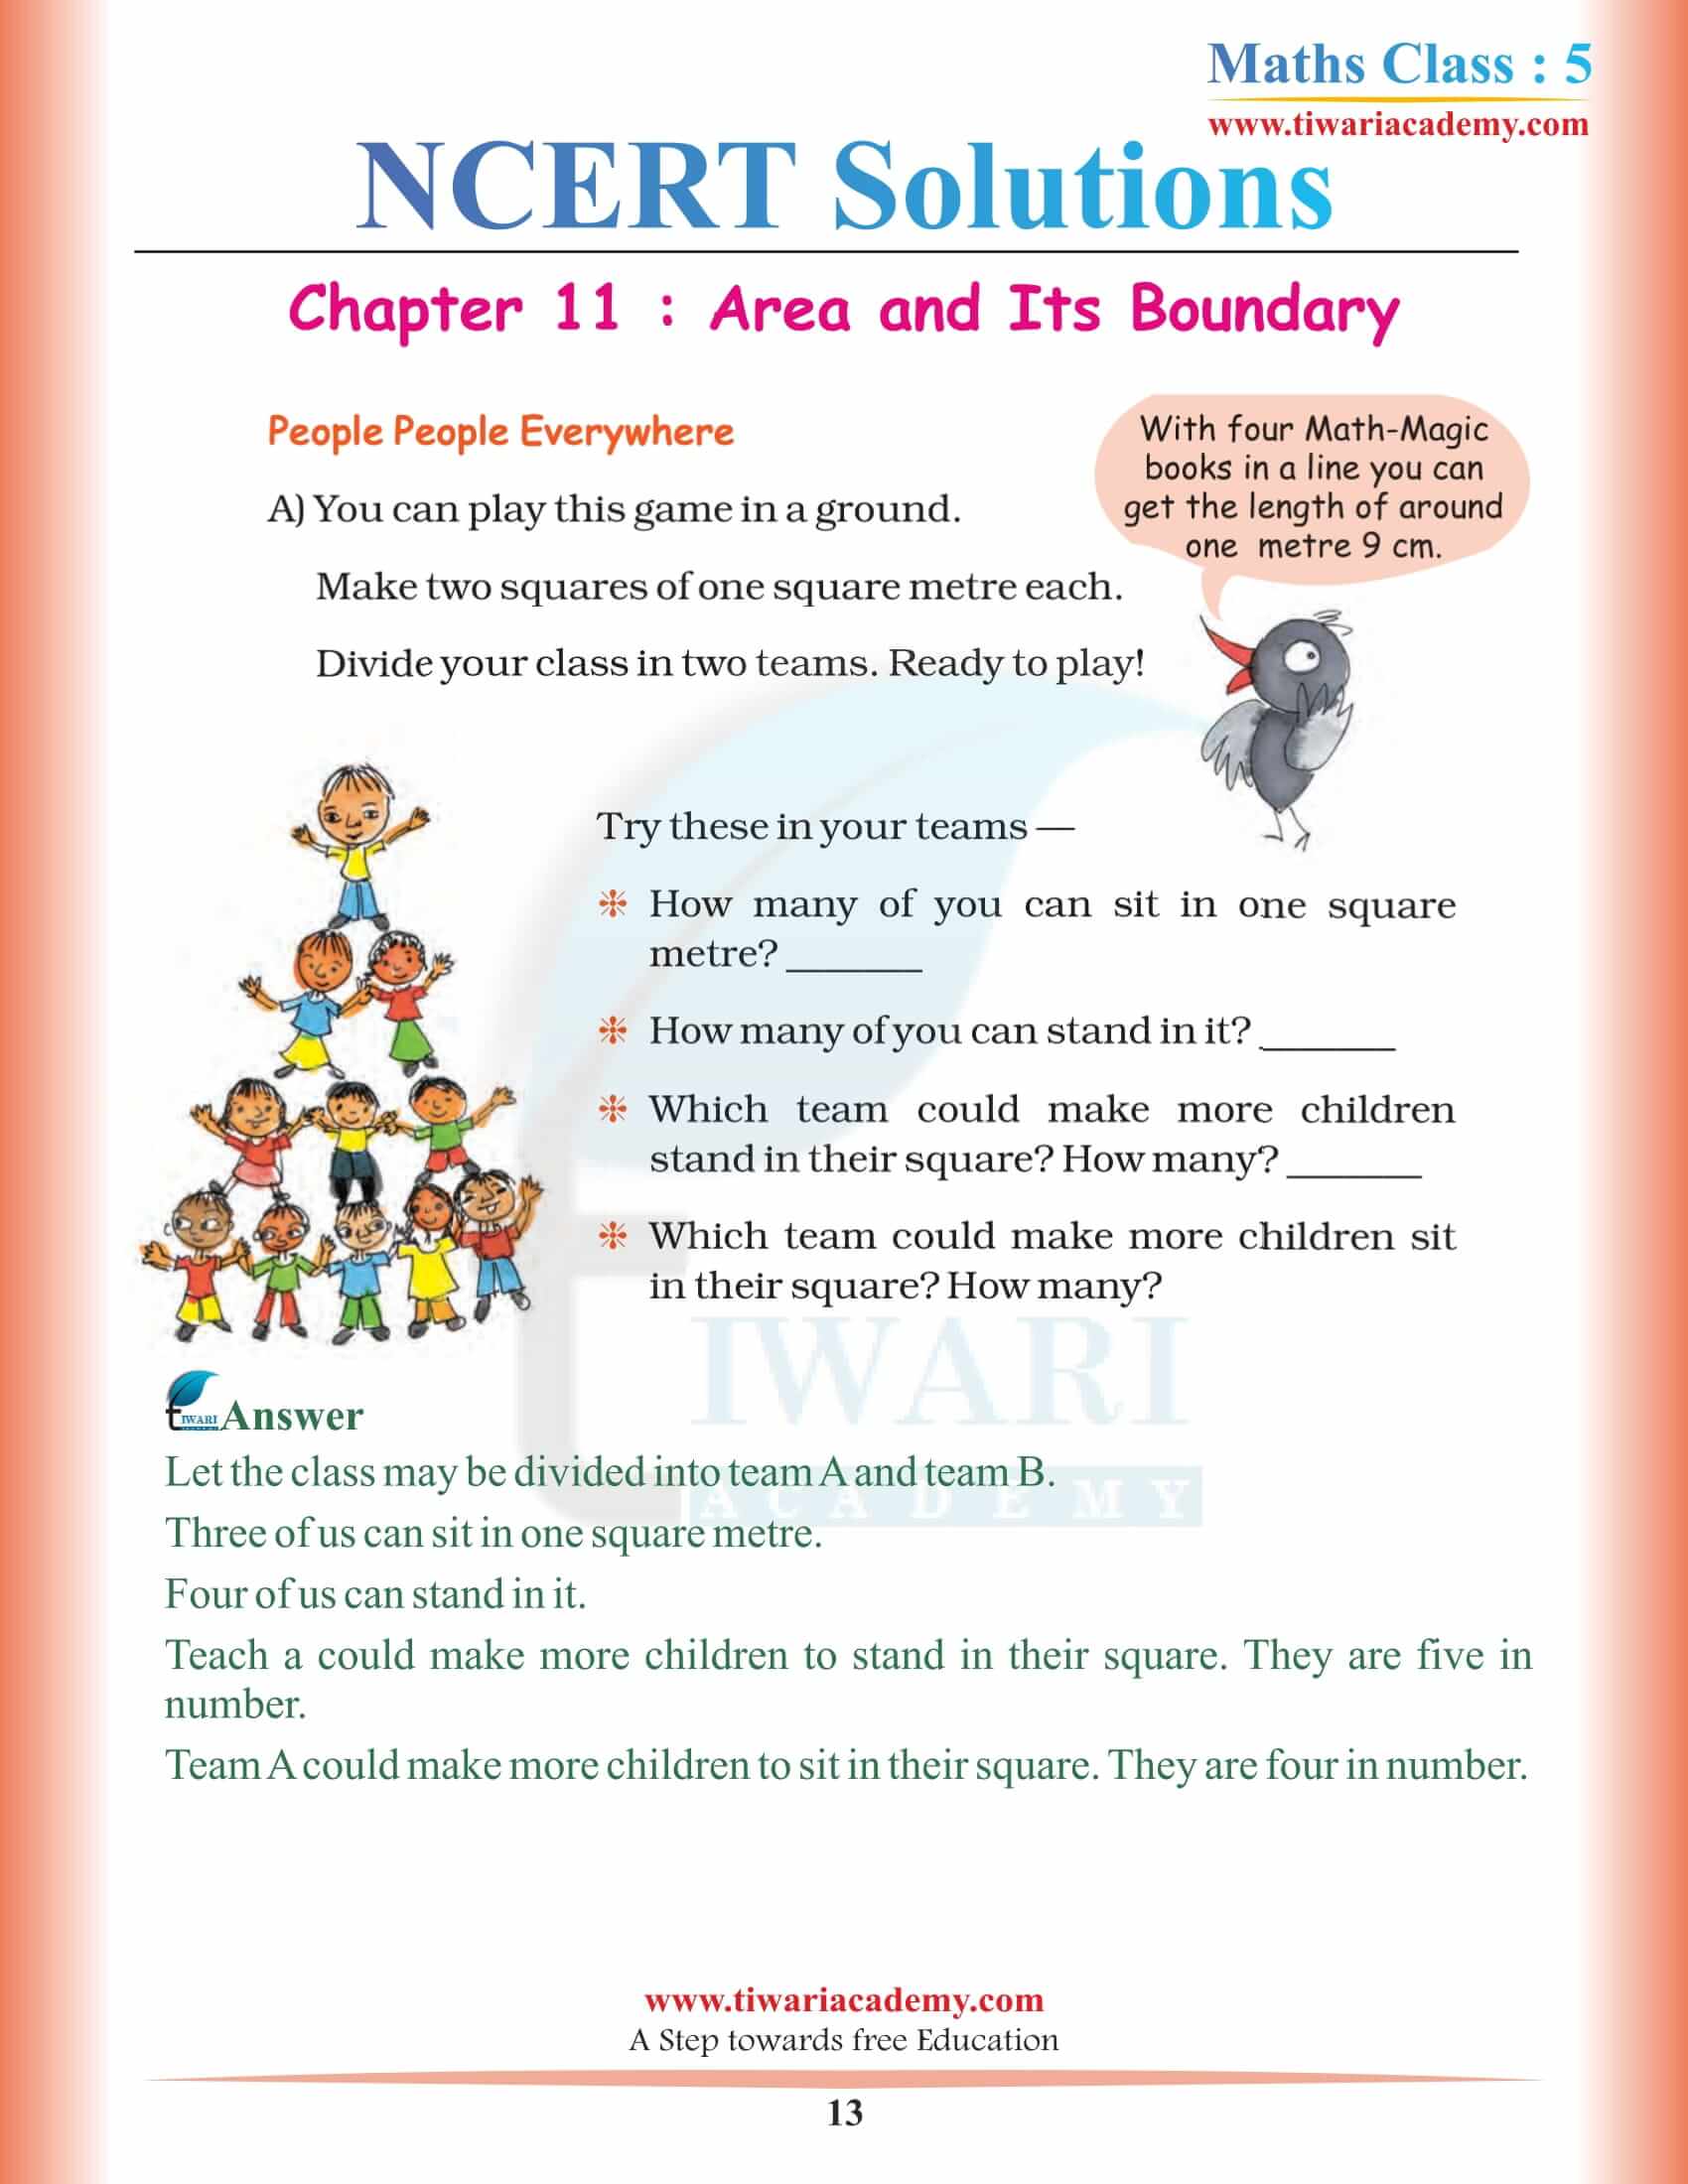 Class 5 Maths NCERT Chapter 11 Question Answers